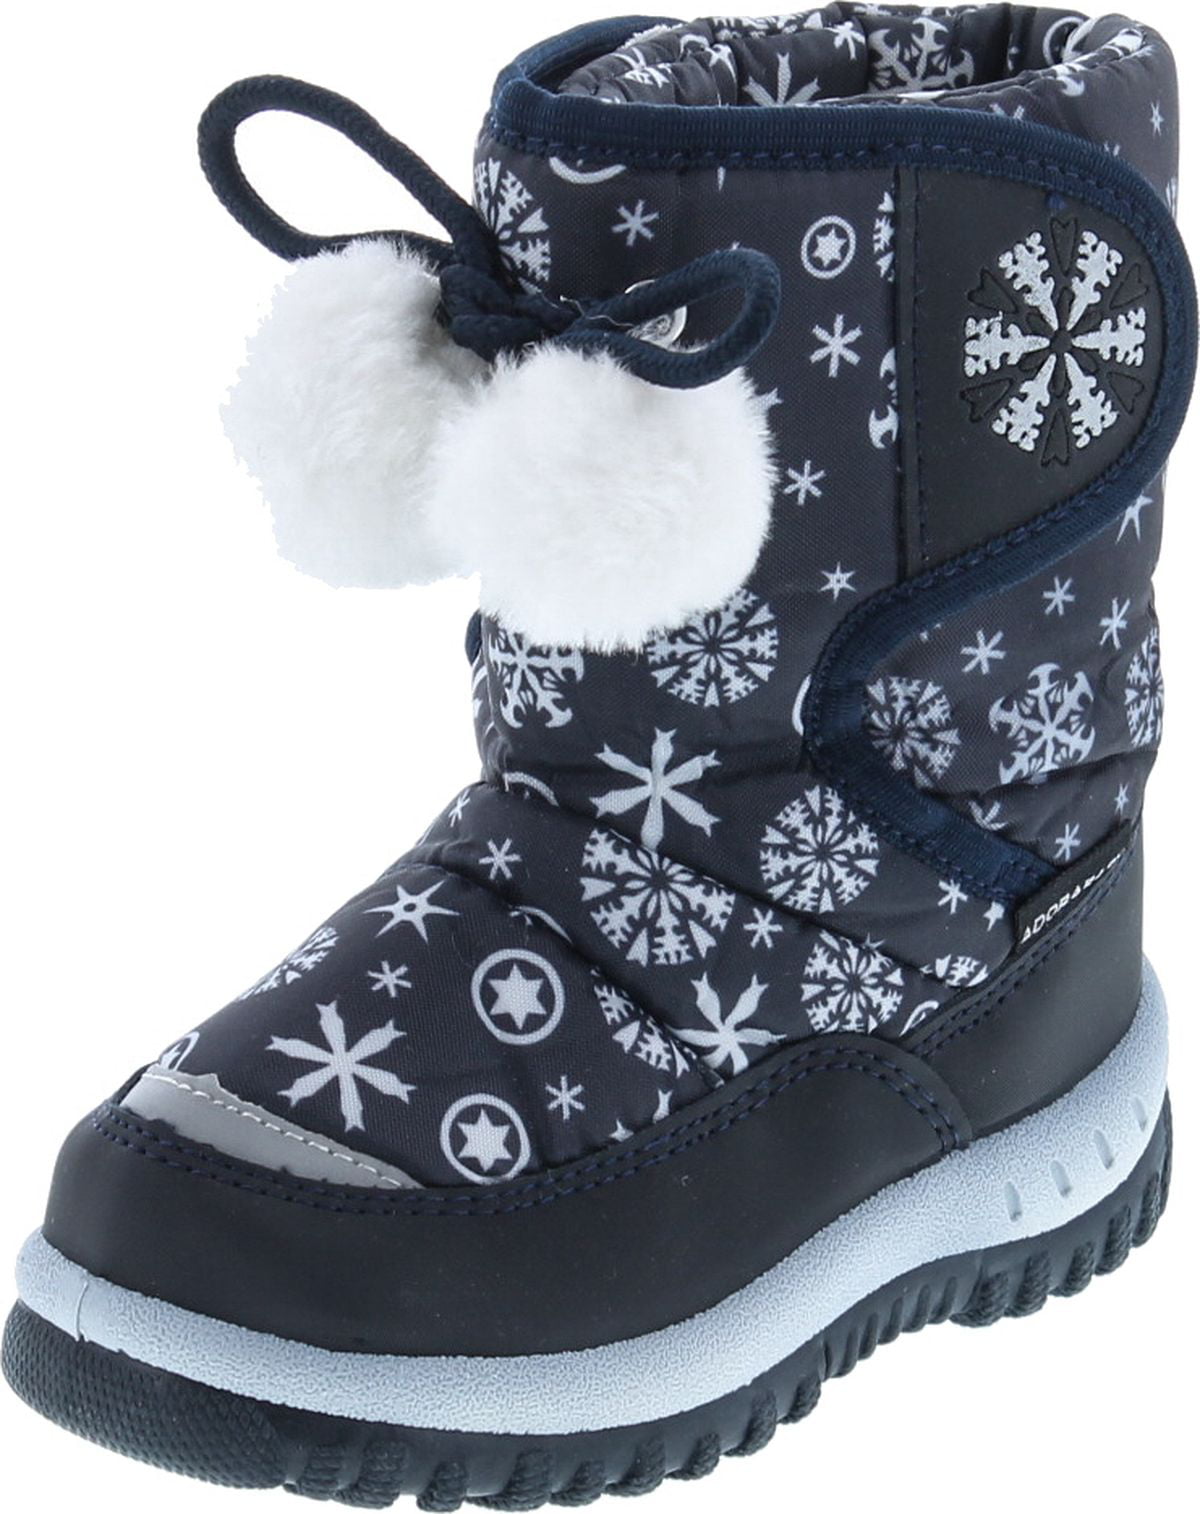 walmart childrens snow boots